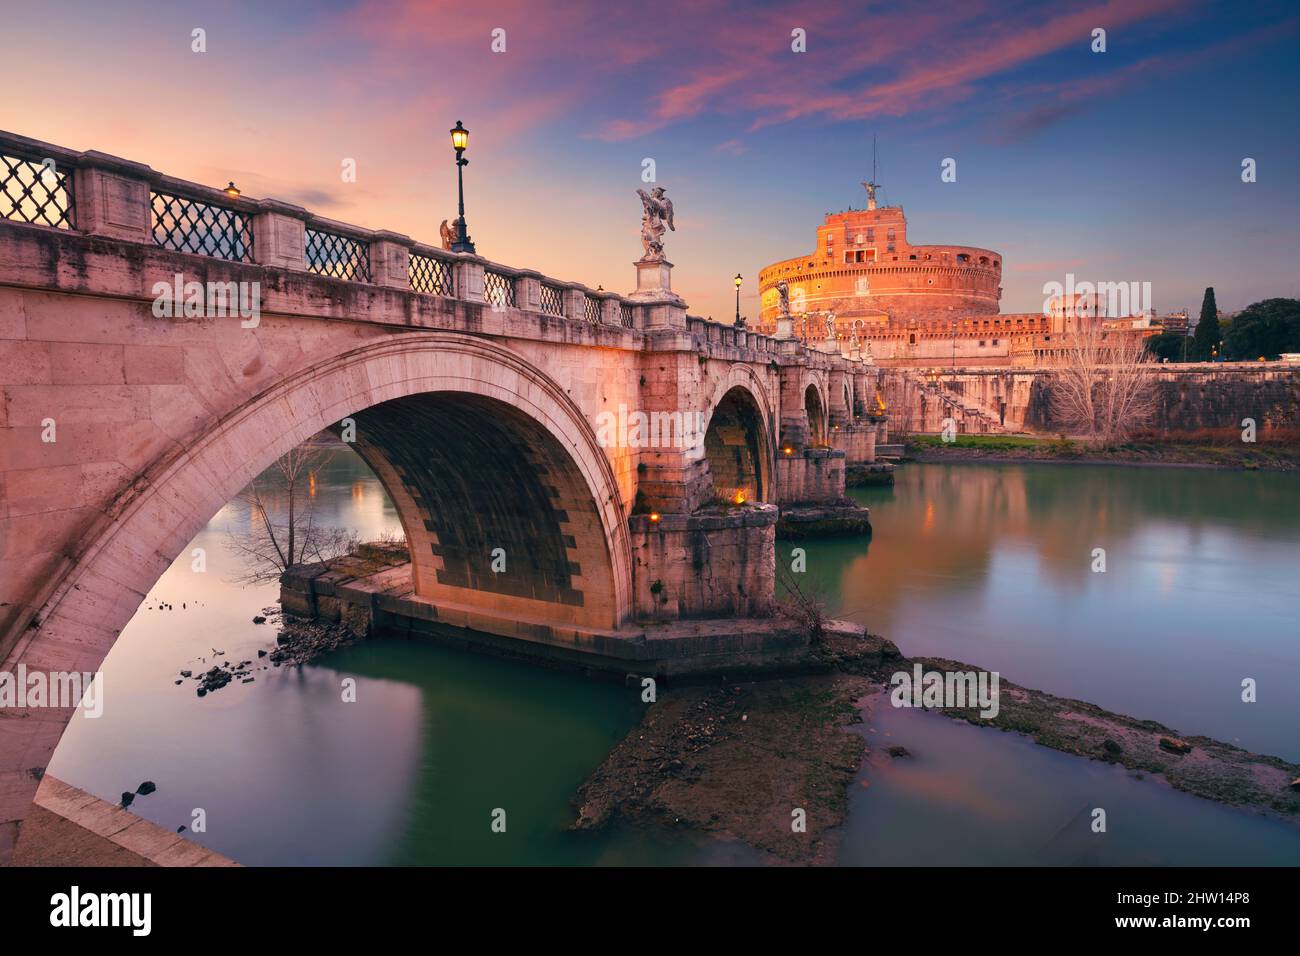 Roma, Italia. Immagine del Castello dell'Angelo Santo e del Ponte dell'Angelo Santo sul Tevere a Roma al tramonto. Foto Stock